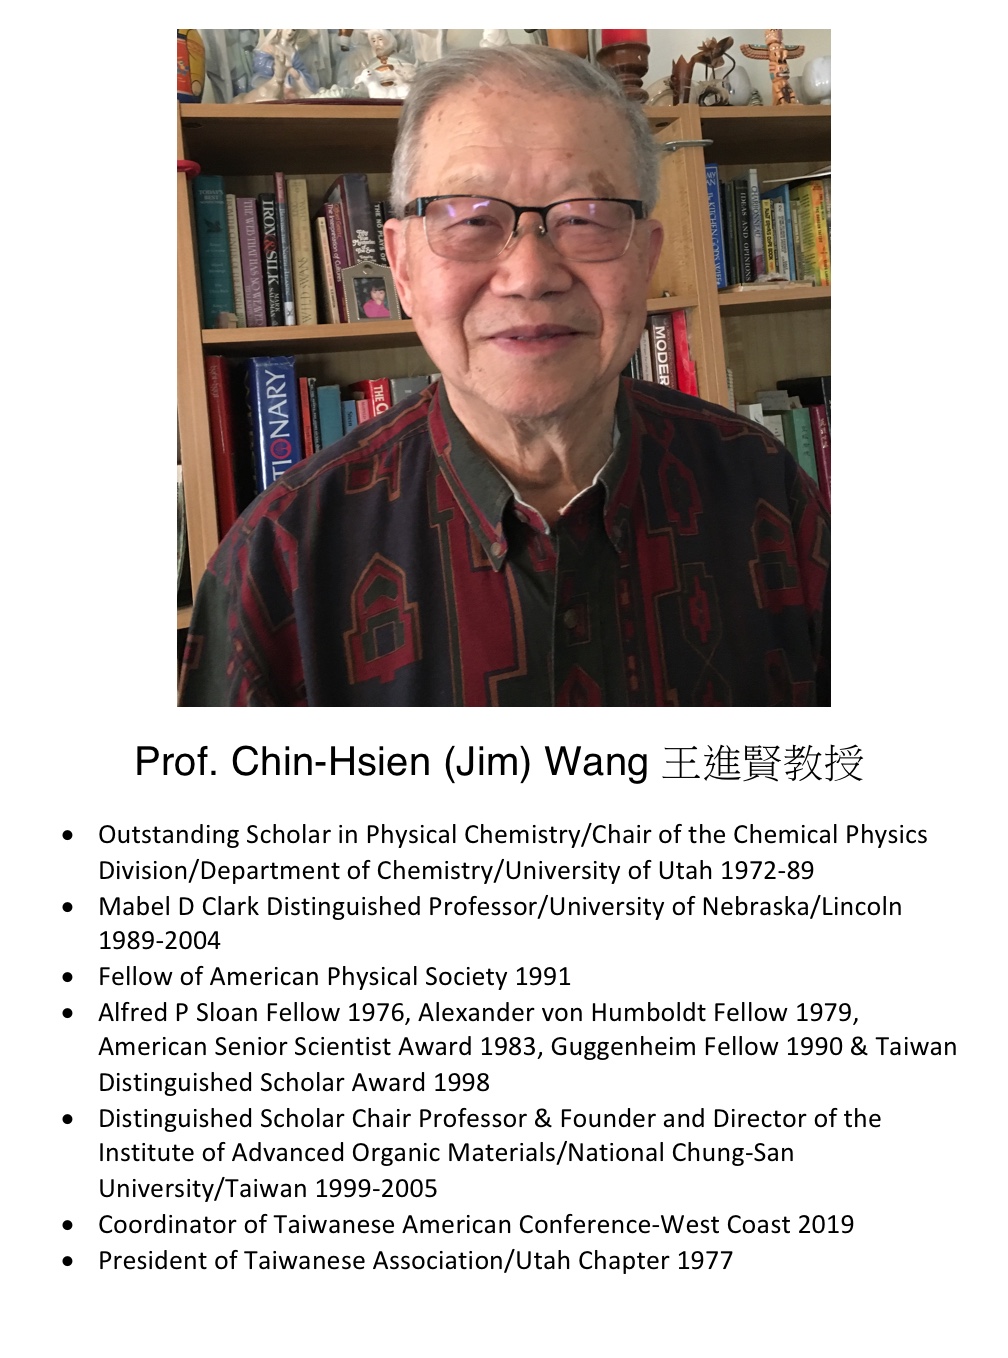 244. Prof. Chin-Hsien (Jim) Wang 王進賢教授